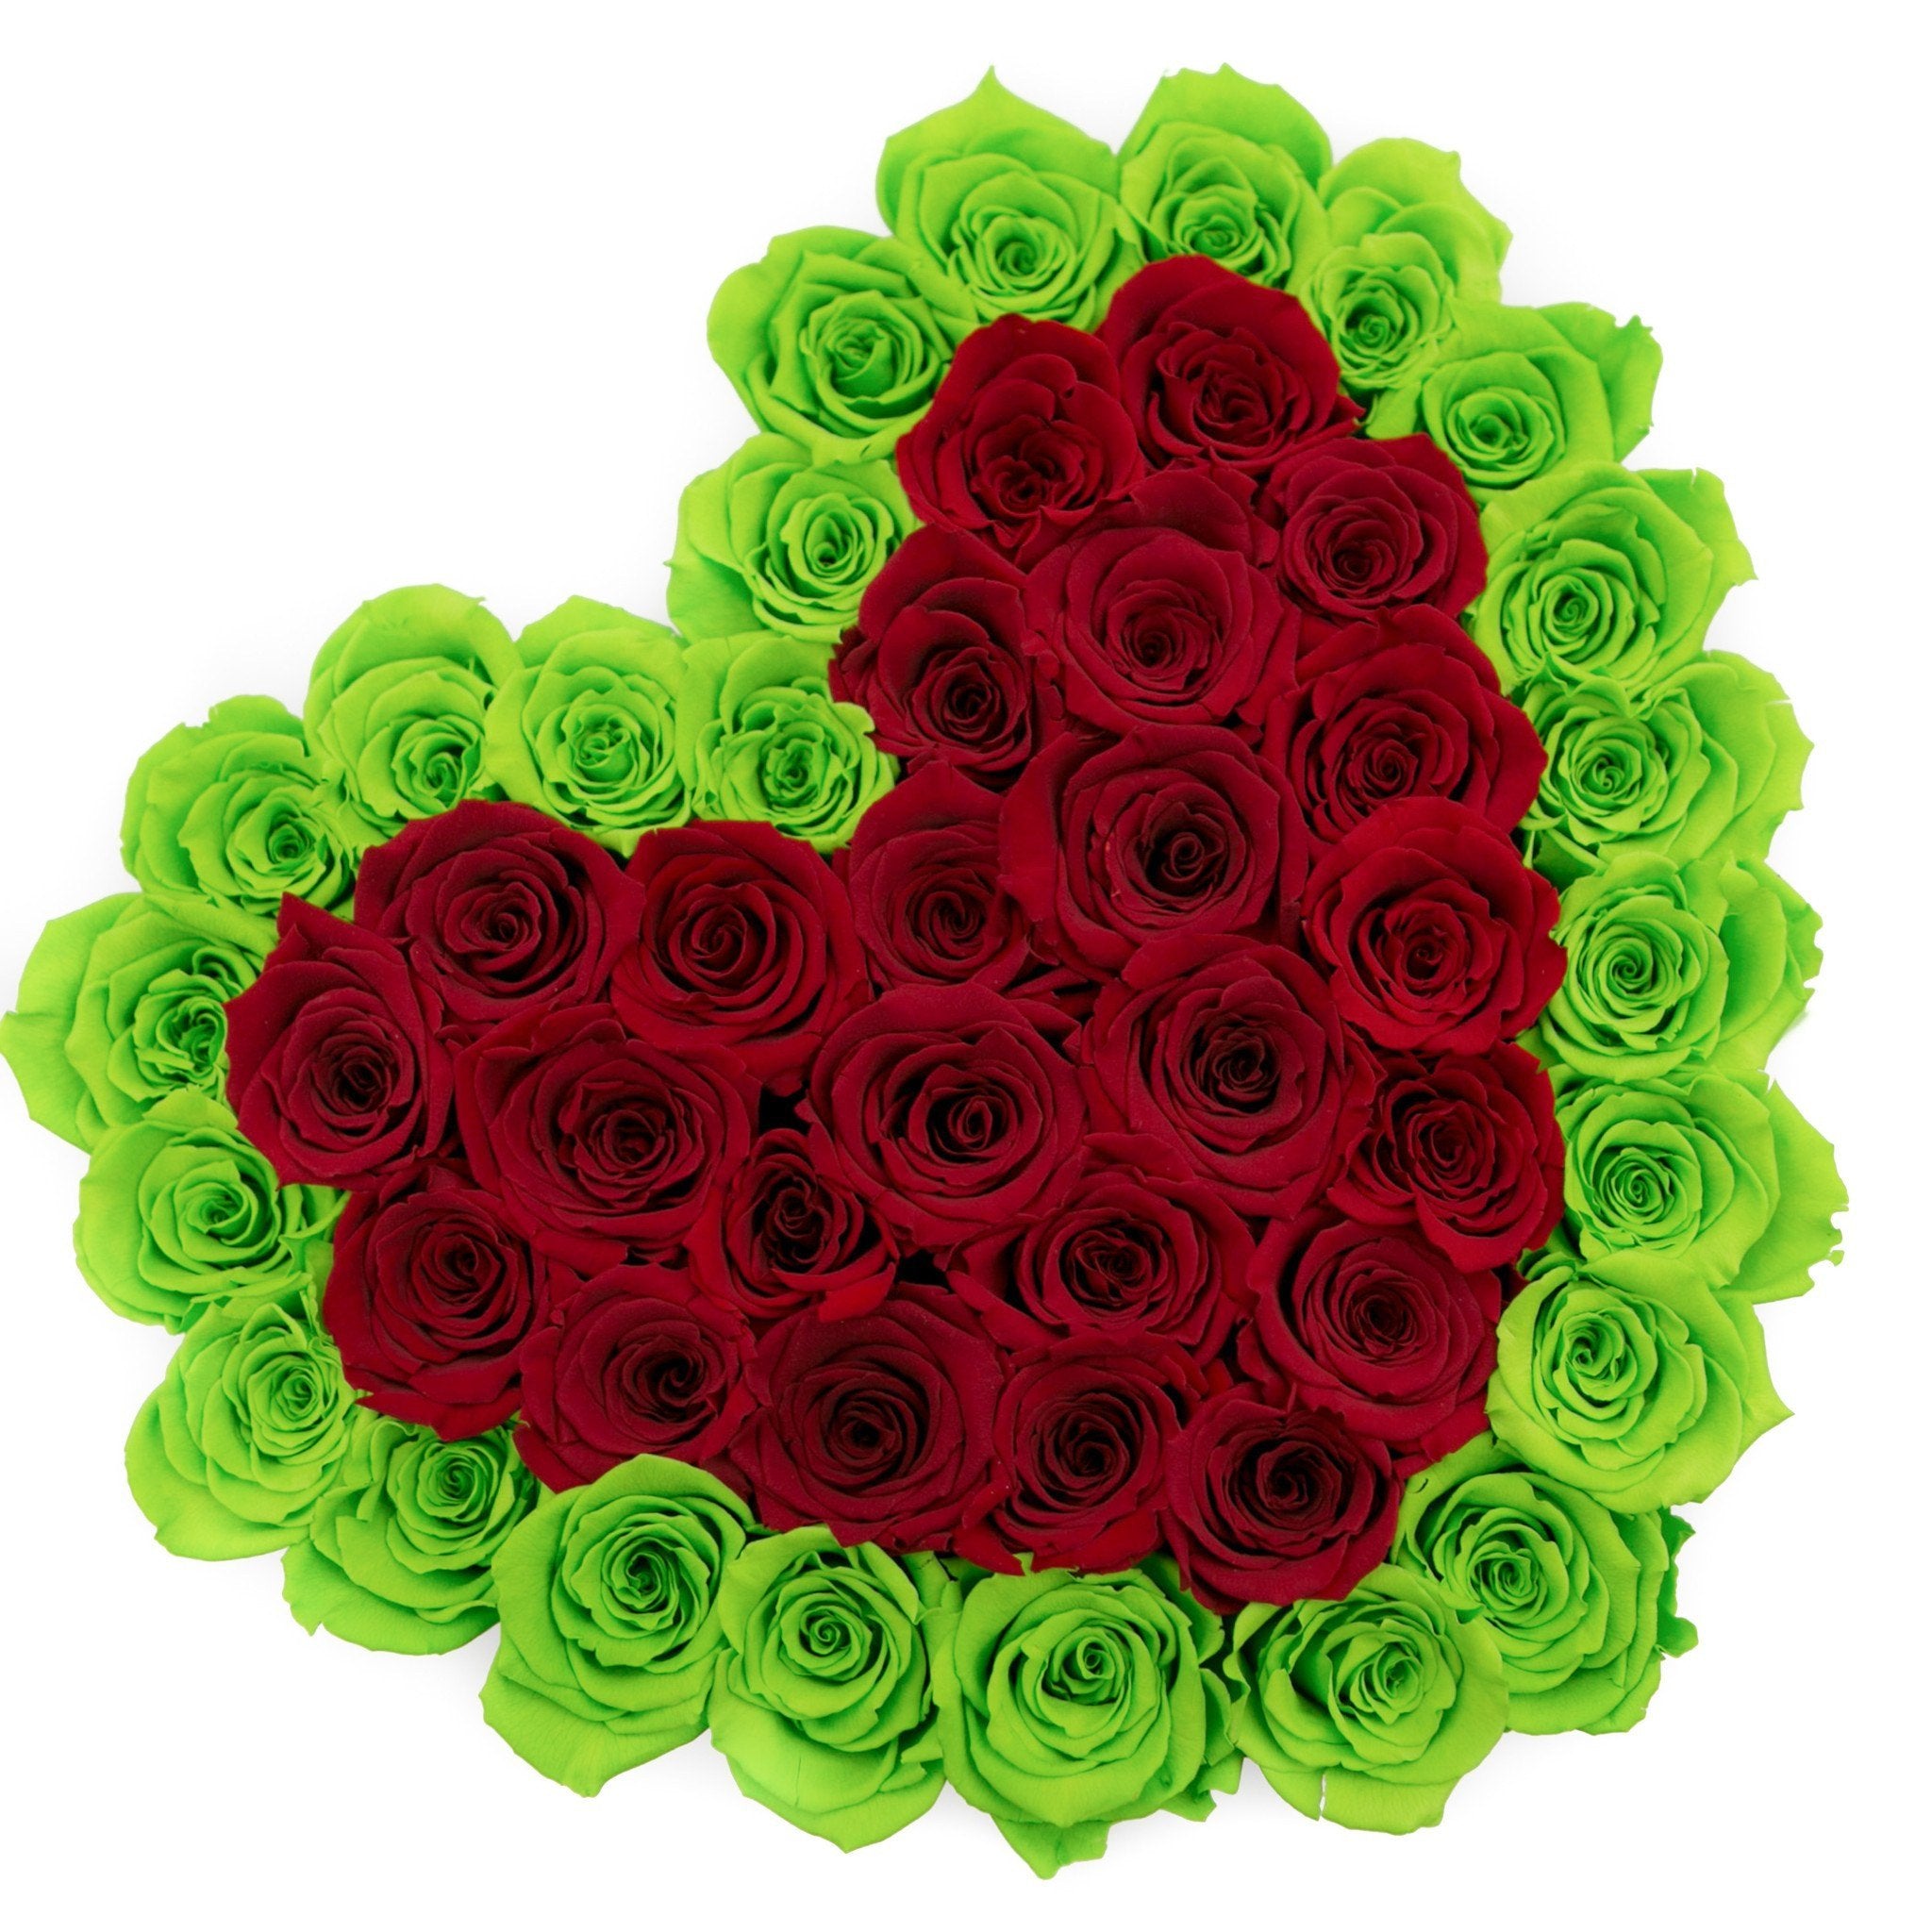 LOVE box - white - light-green&red roses green eternity roses - the million roses